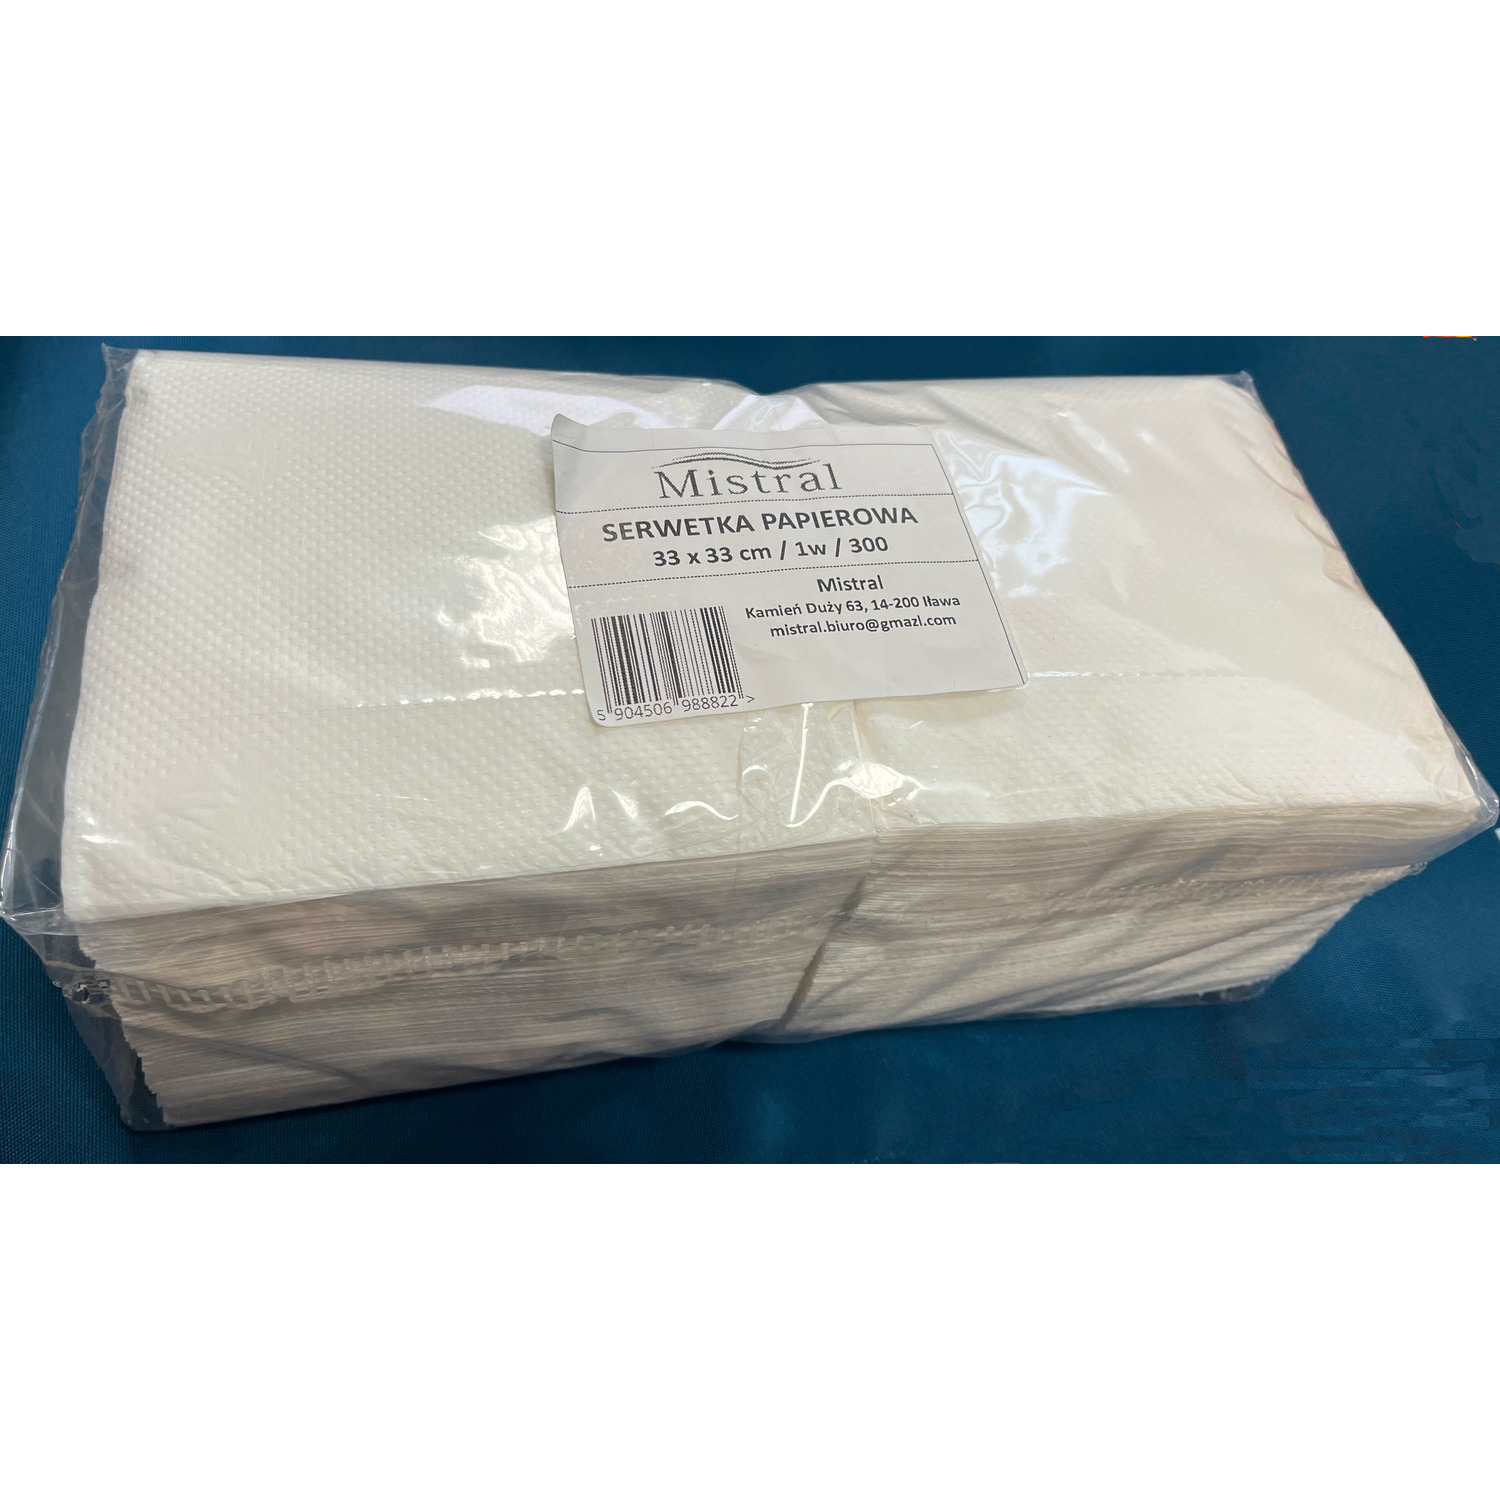 Serwetka papierowa 33x33cm (300 sztuk) 1 warstwa MISTRAL, sw 0040536